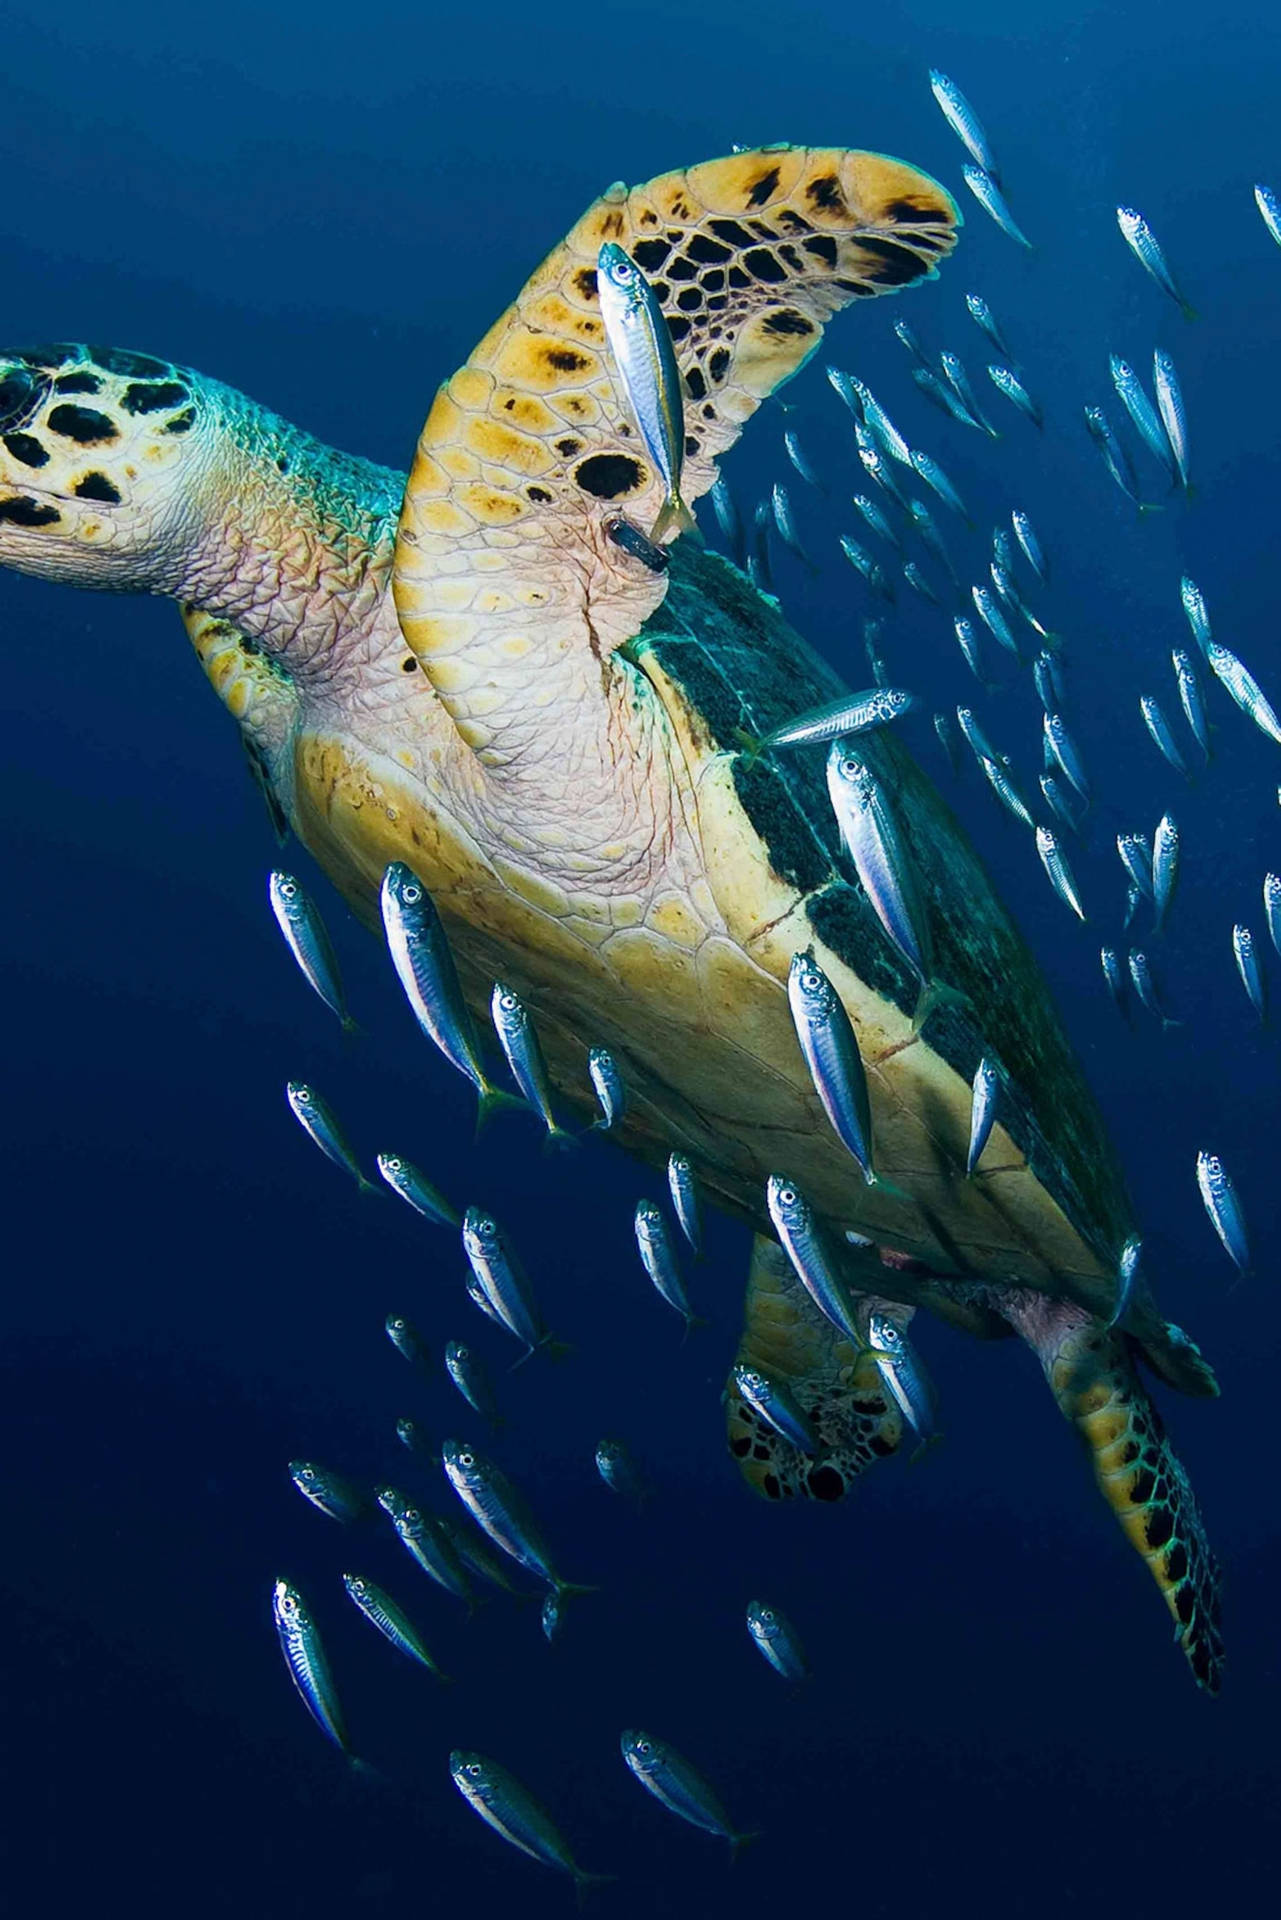 Hawksbillsea Water Turtle Photography - Fotografering Av Hawksbill Havssköldpadda Under Vattnet. Wallpaper